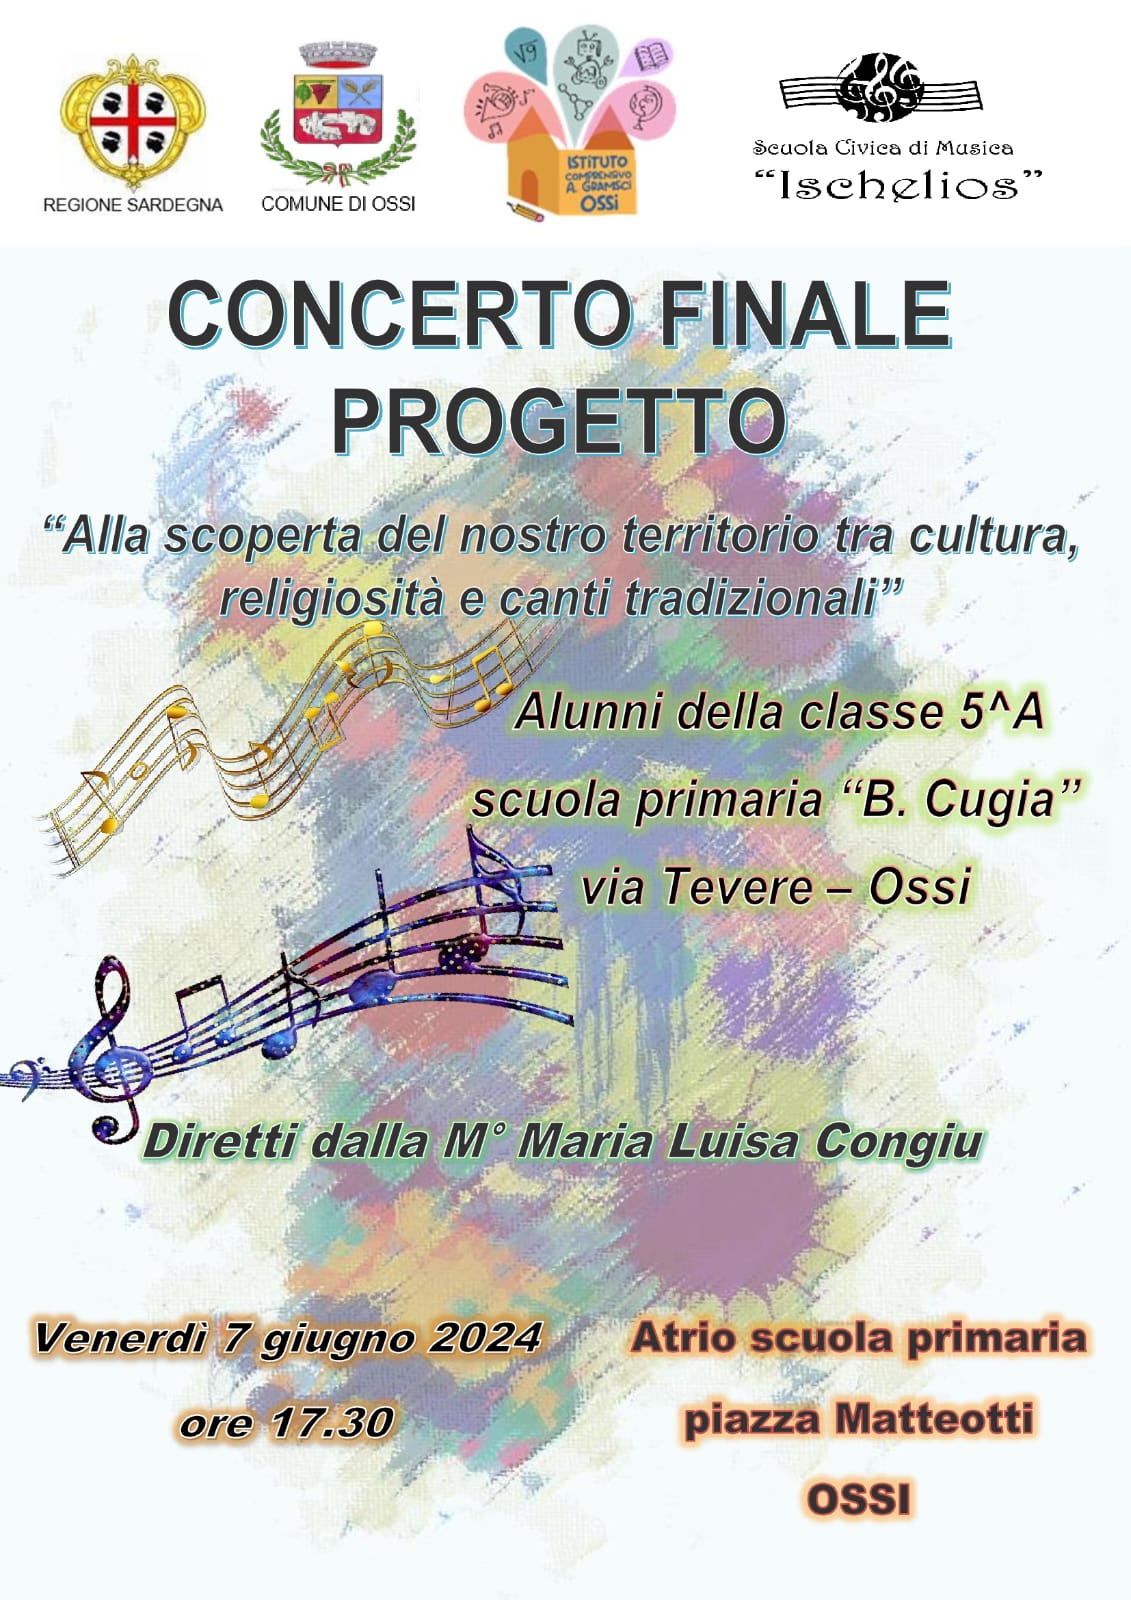  Concerto Finale degli alunni della classe 5° A scuola primaria "B. Cugia" diretto dalla maestra M. Luisa Congiu Venerdì 7 Giugno ore 17:30